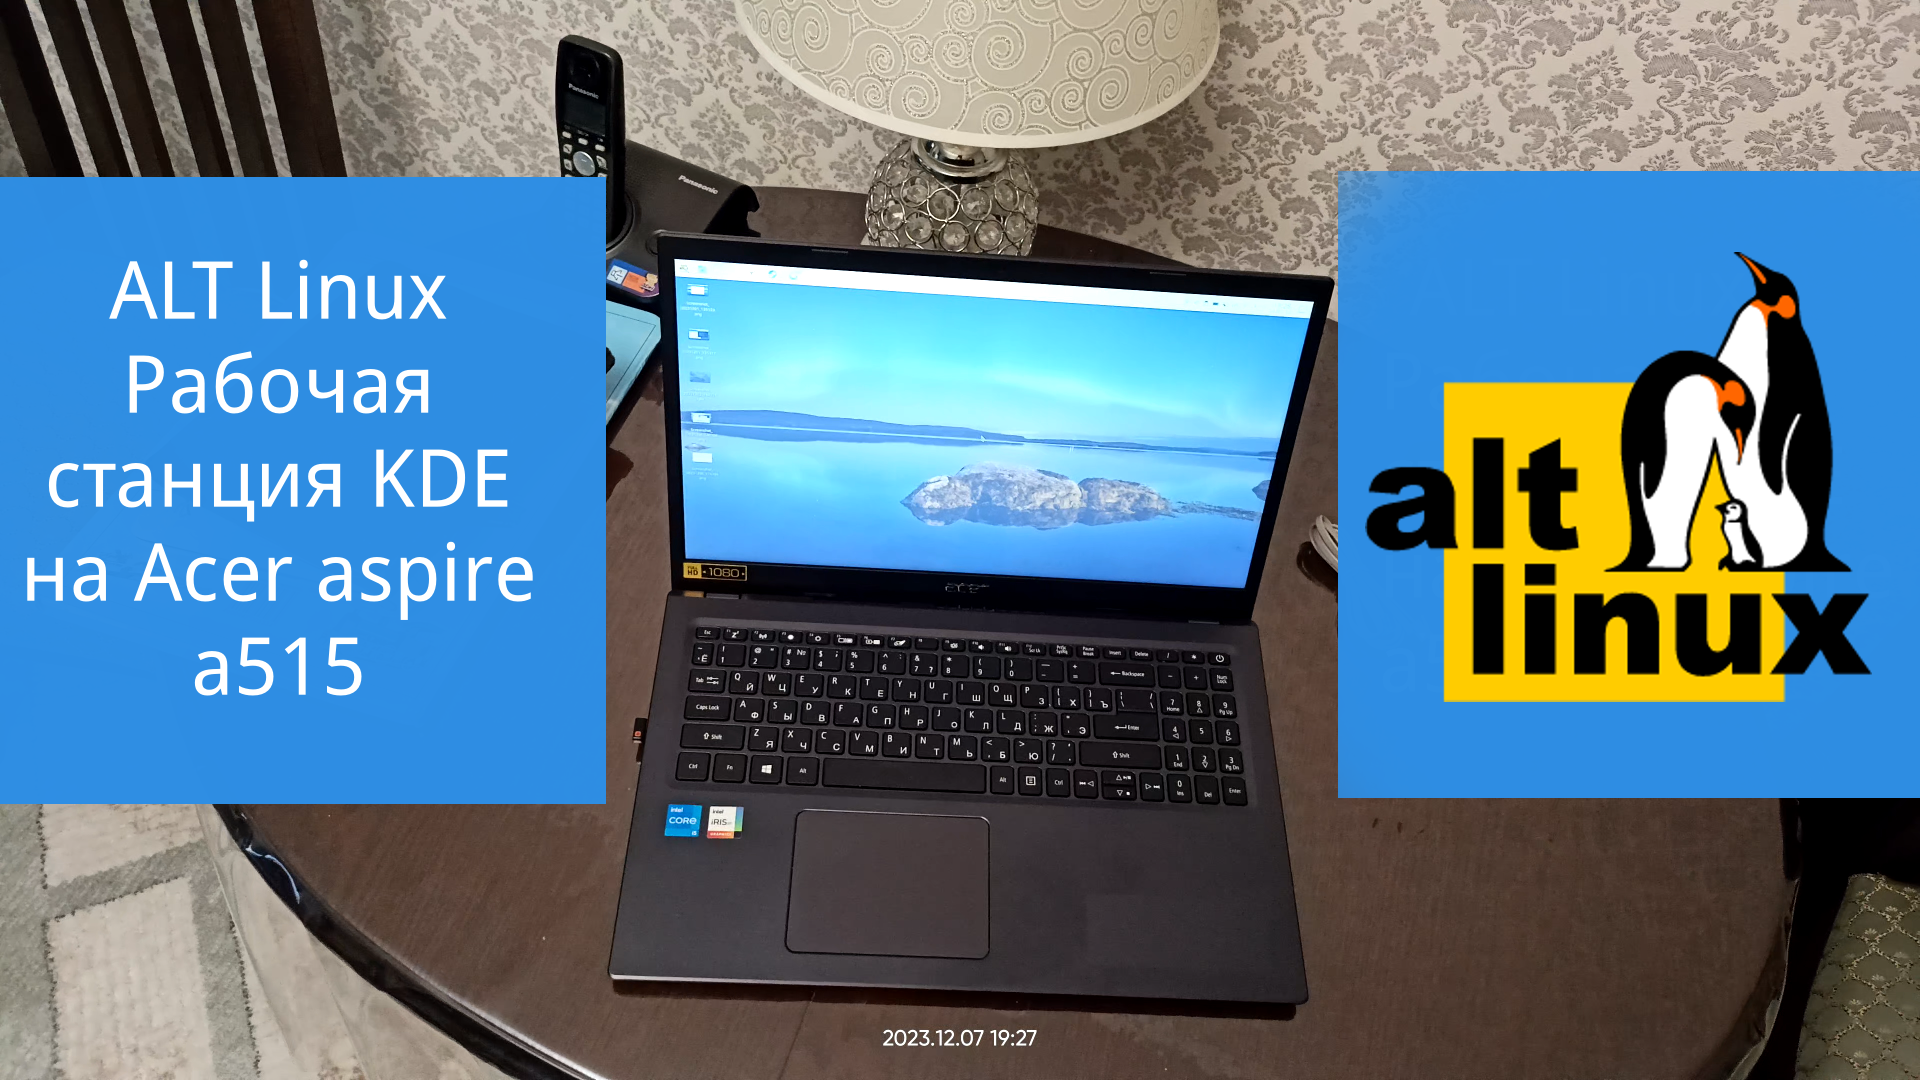 ALT Linux Рабочая станция KDE 10 и Acer aspire a515 - i5 1135g7 + iris xe graphics